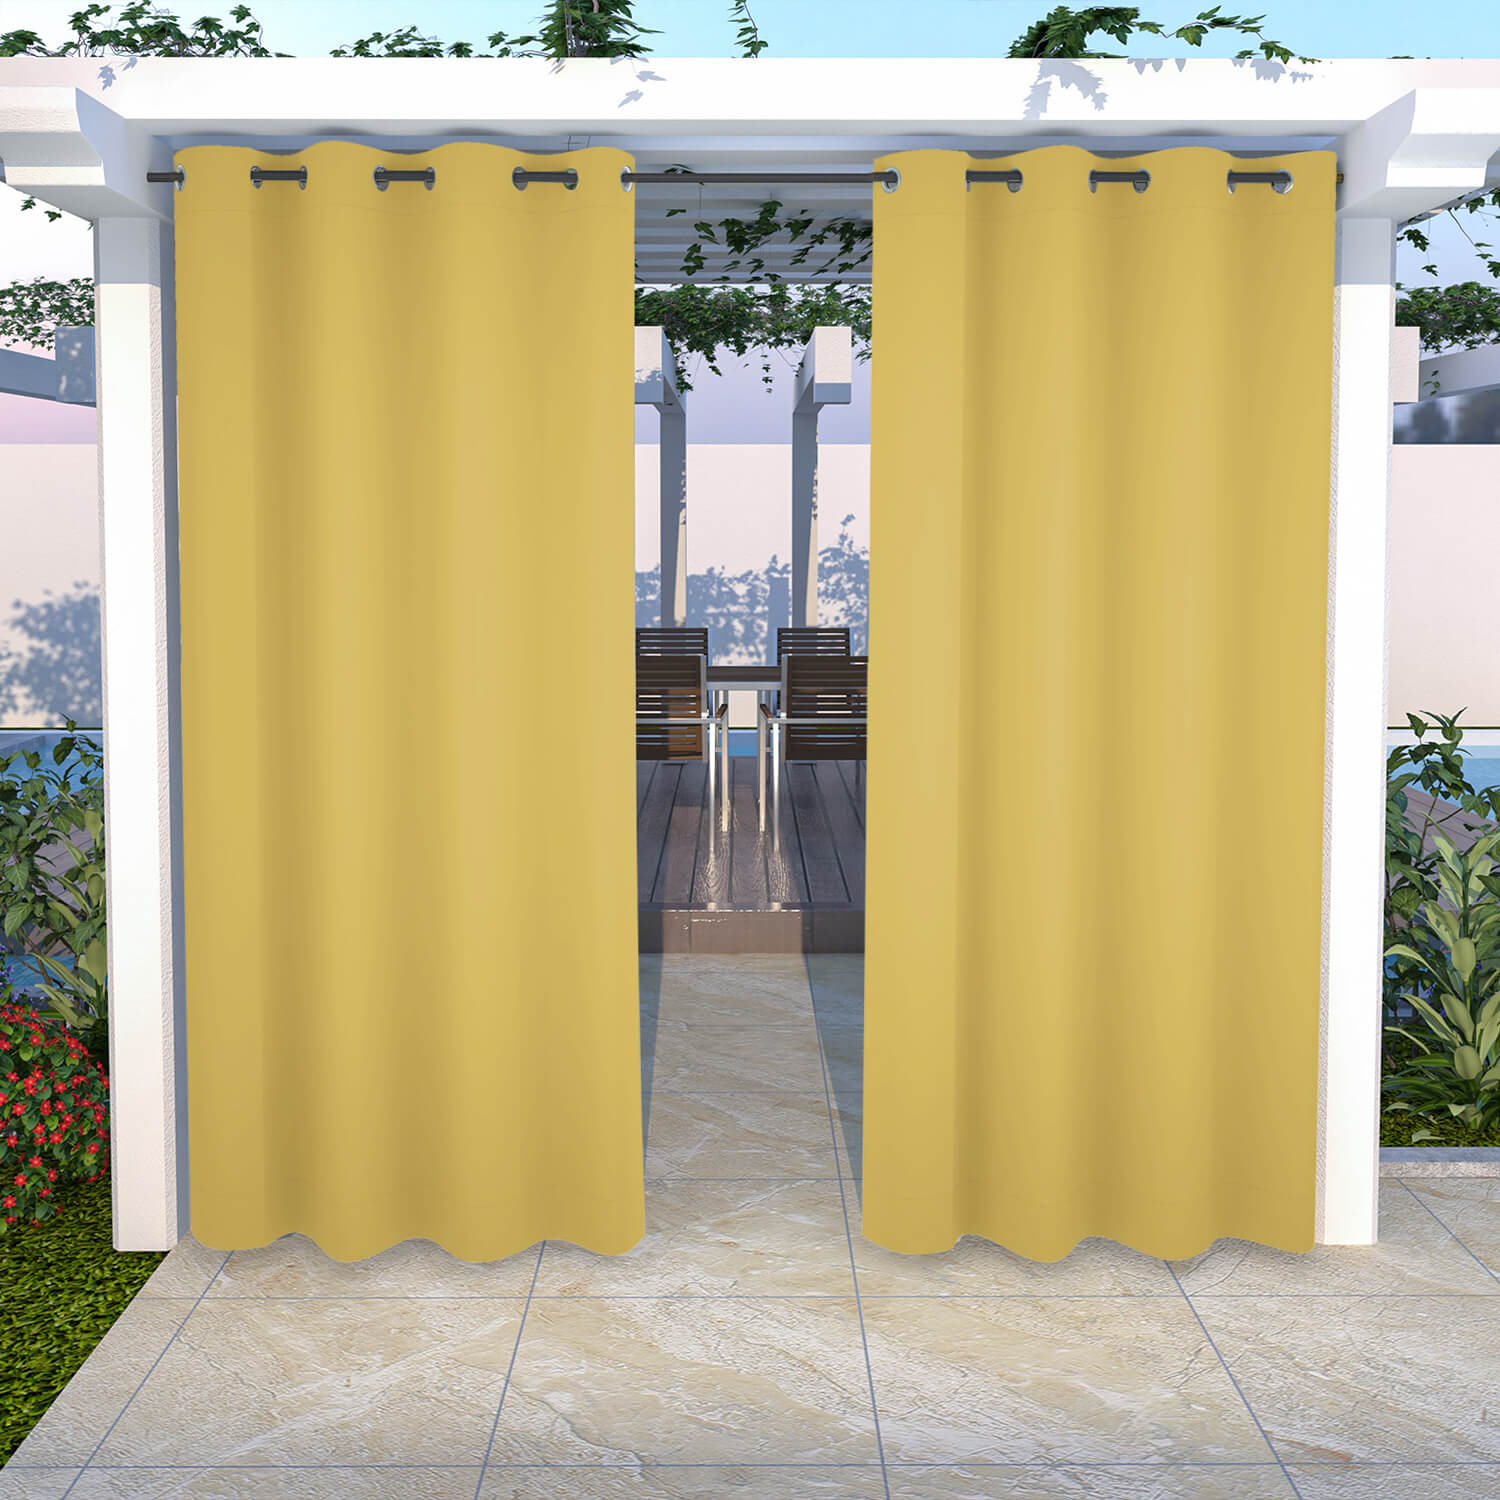 Snowcity Outdoor Curtains Waterproof Grommet Top 1 Panel - Yellow